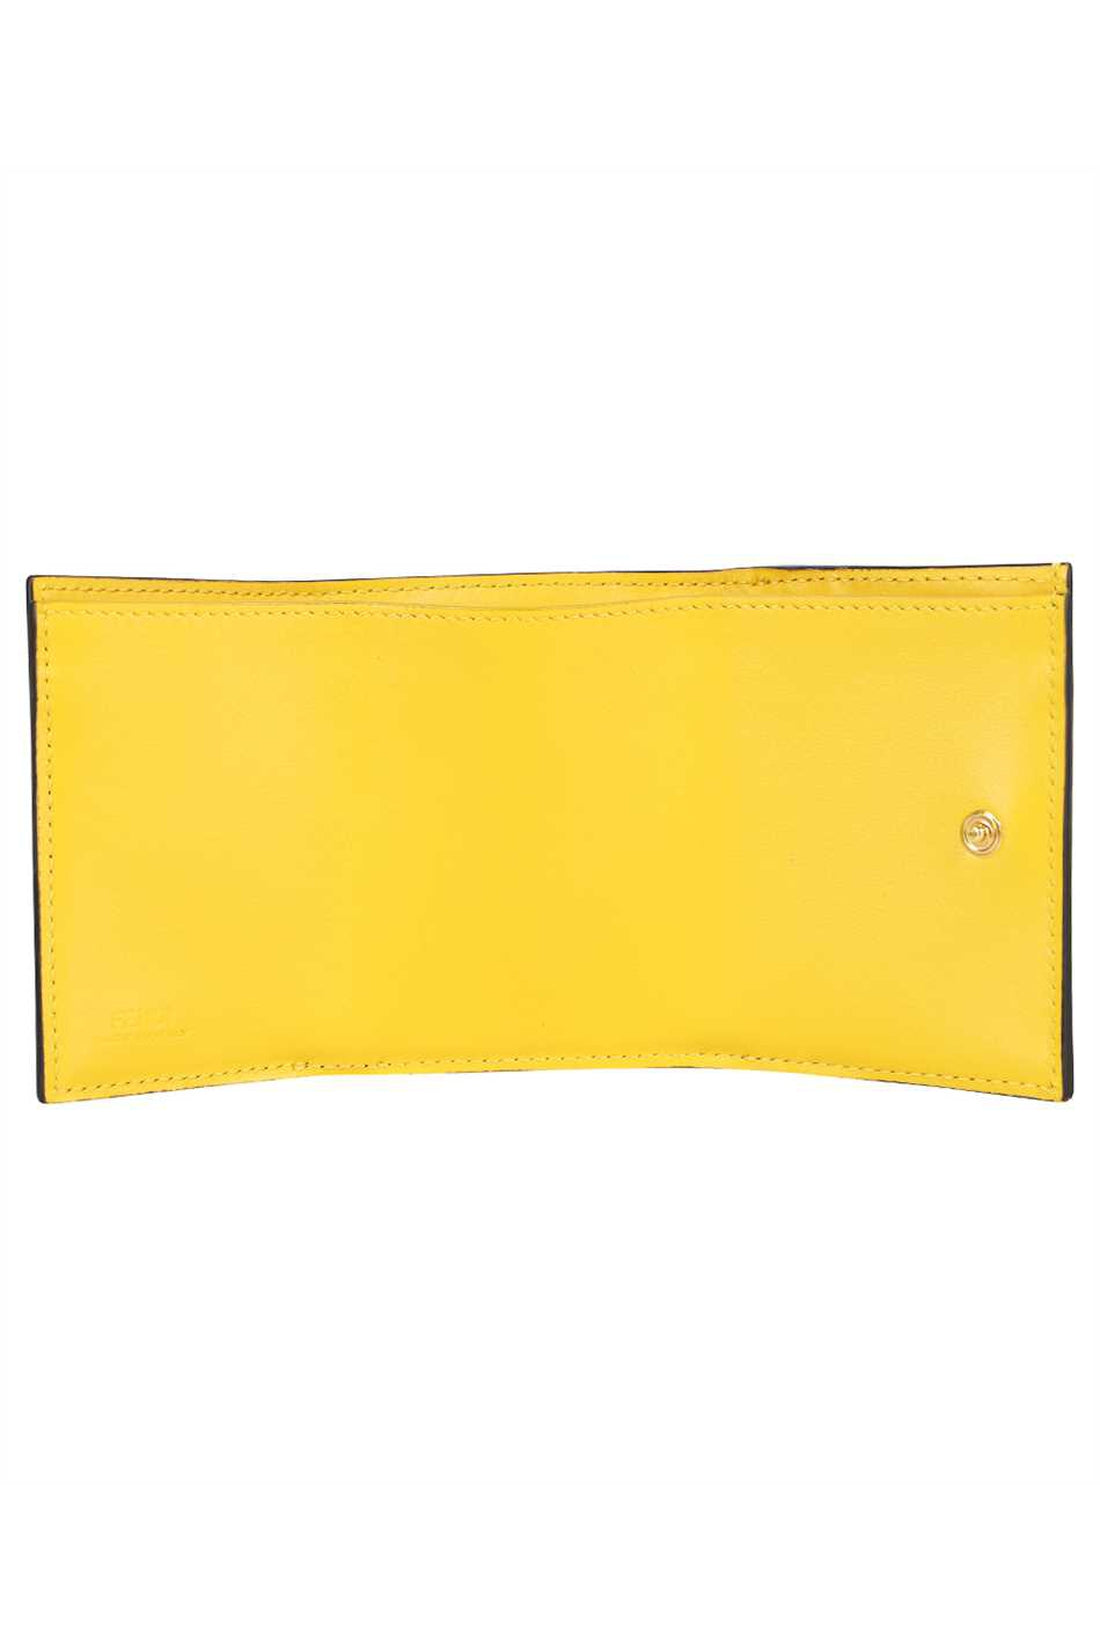 Fendi-OUTLET-SALE-Leather tri-fold wallet-ARCHIVIST